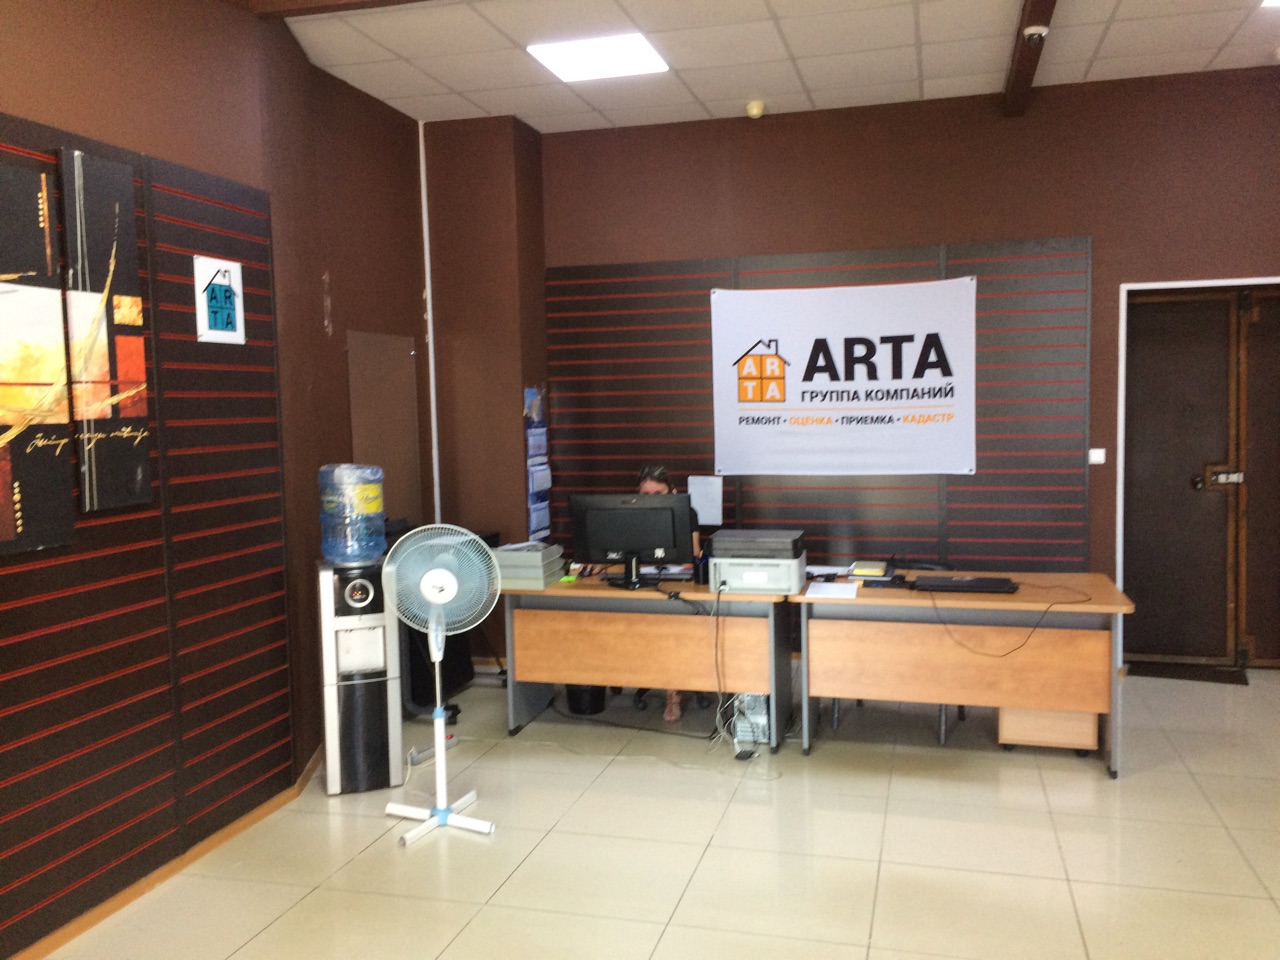 Офис группы компаний ARTA